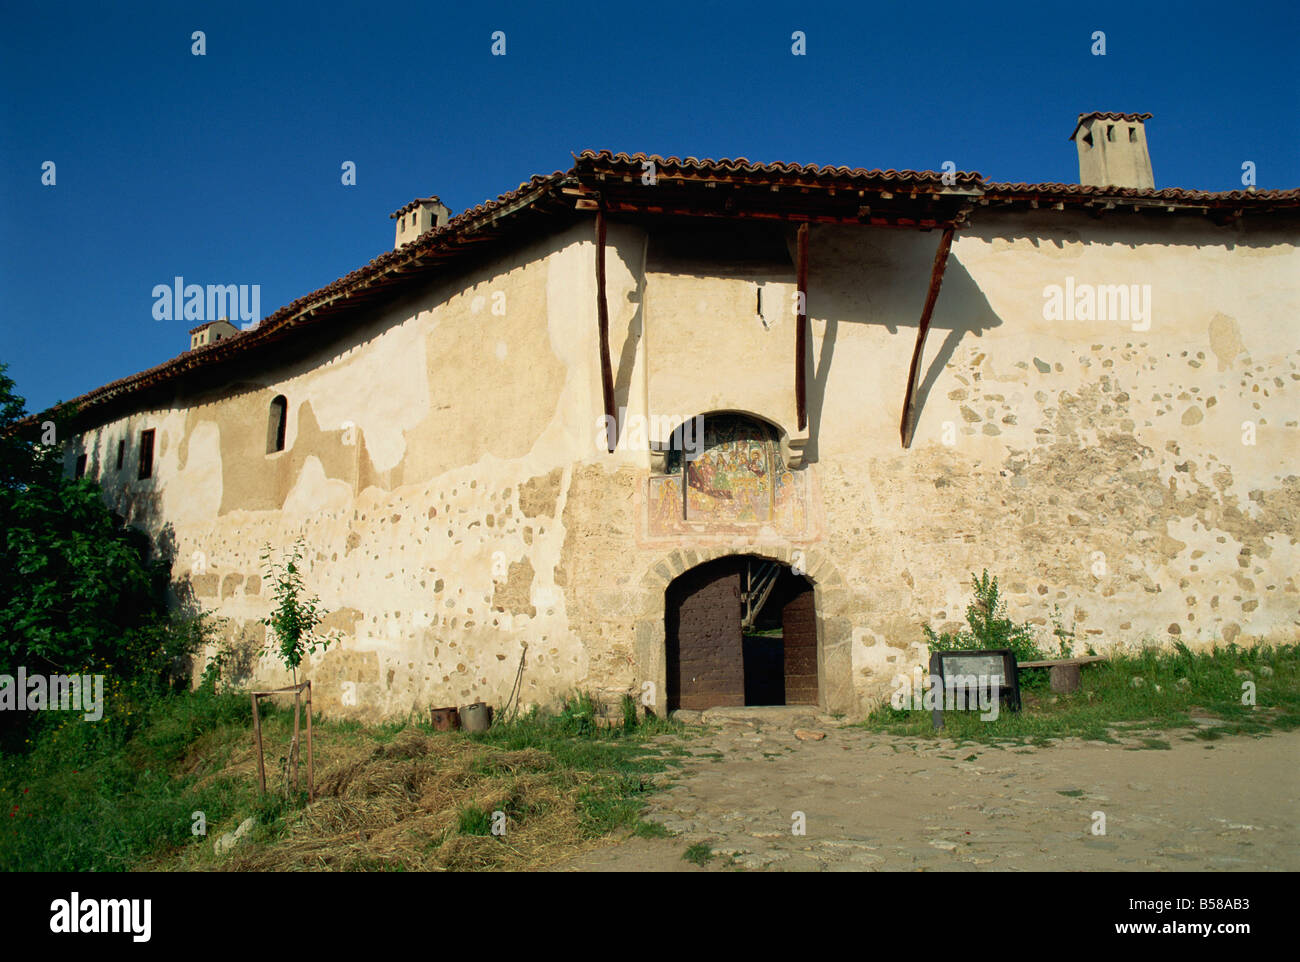 La puerta del monasterio Rozhen, fundada en el siglo XII, Rozhen, Bulgaria, Europa Foto de stock